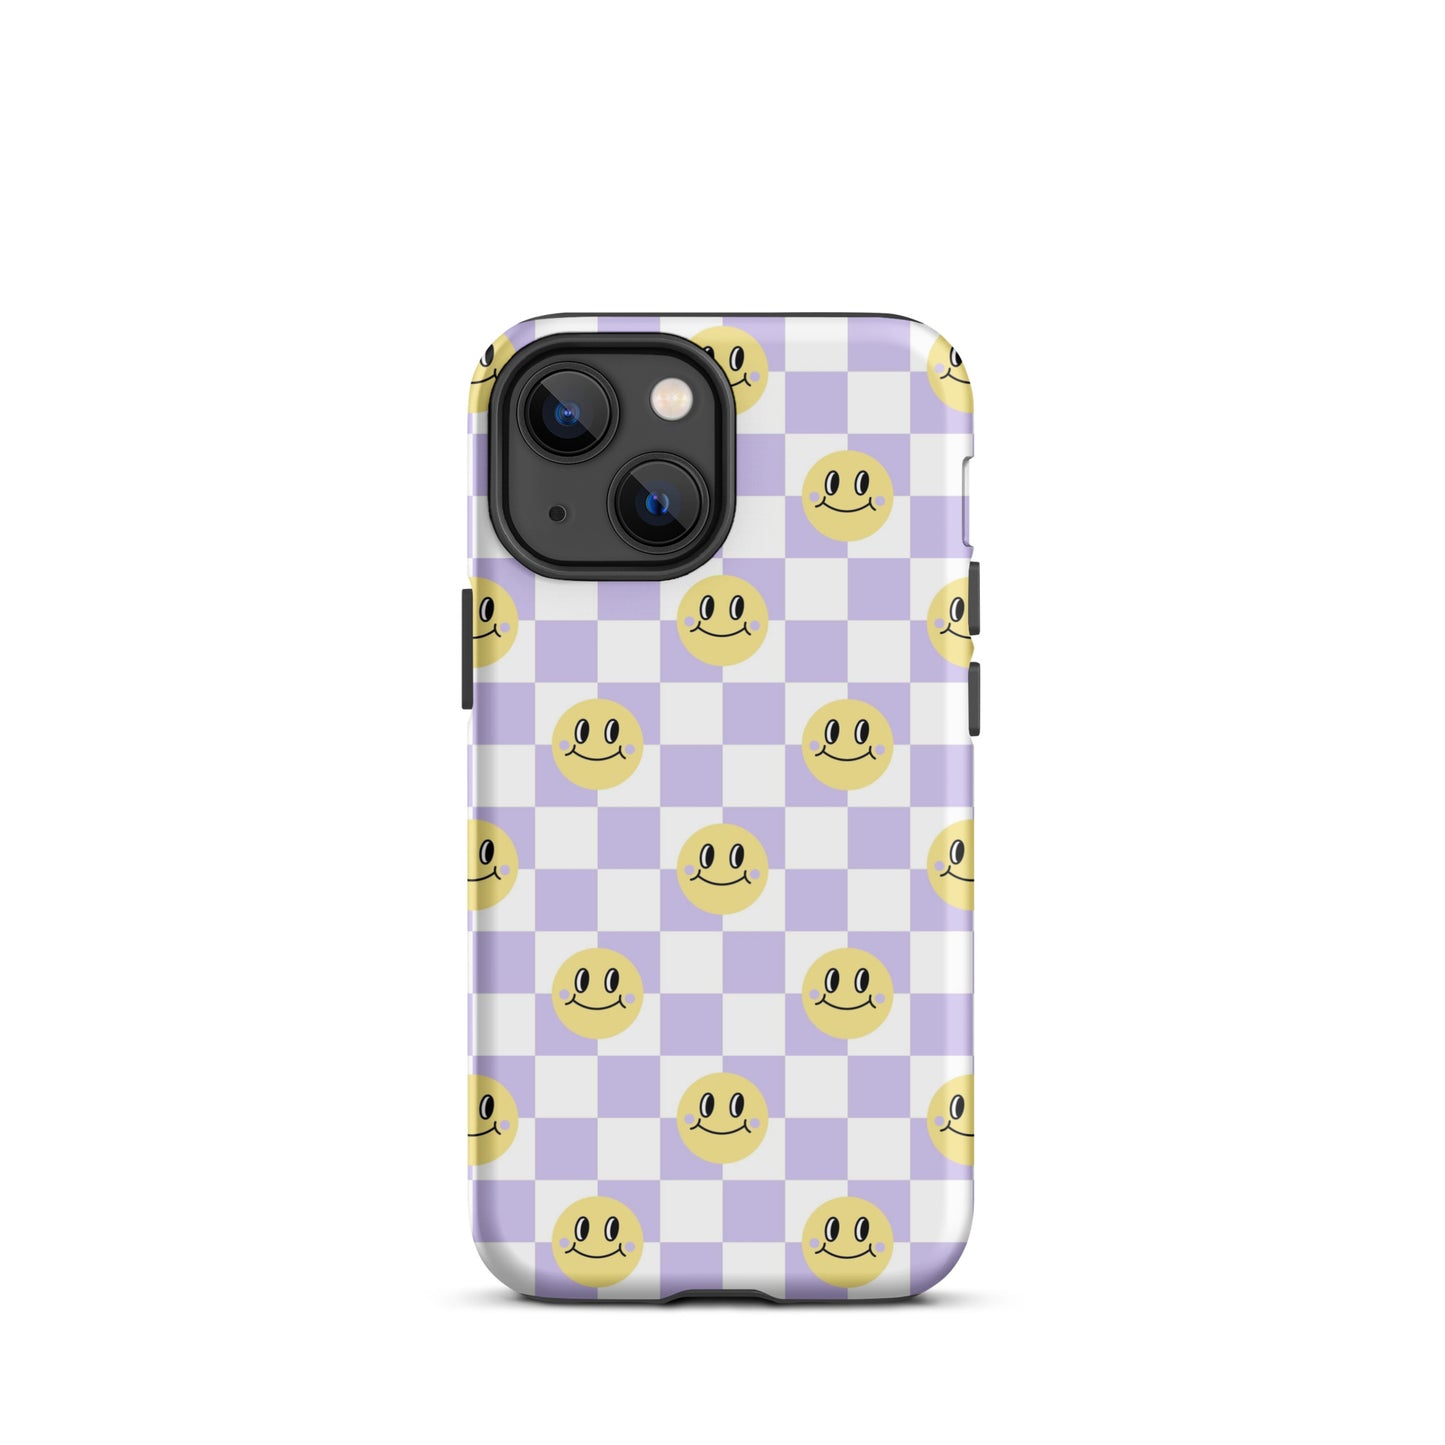 Checkered Smiley Faces iPhone Case